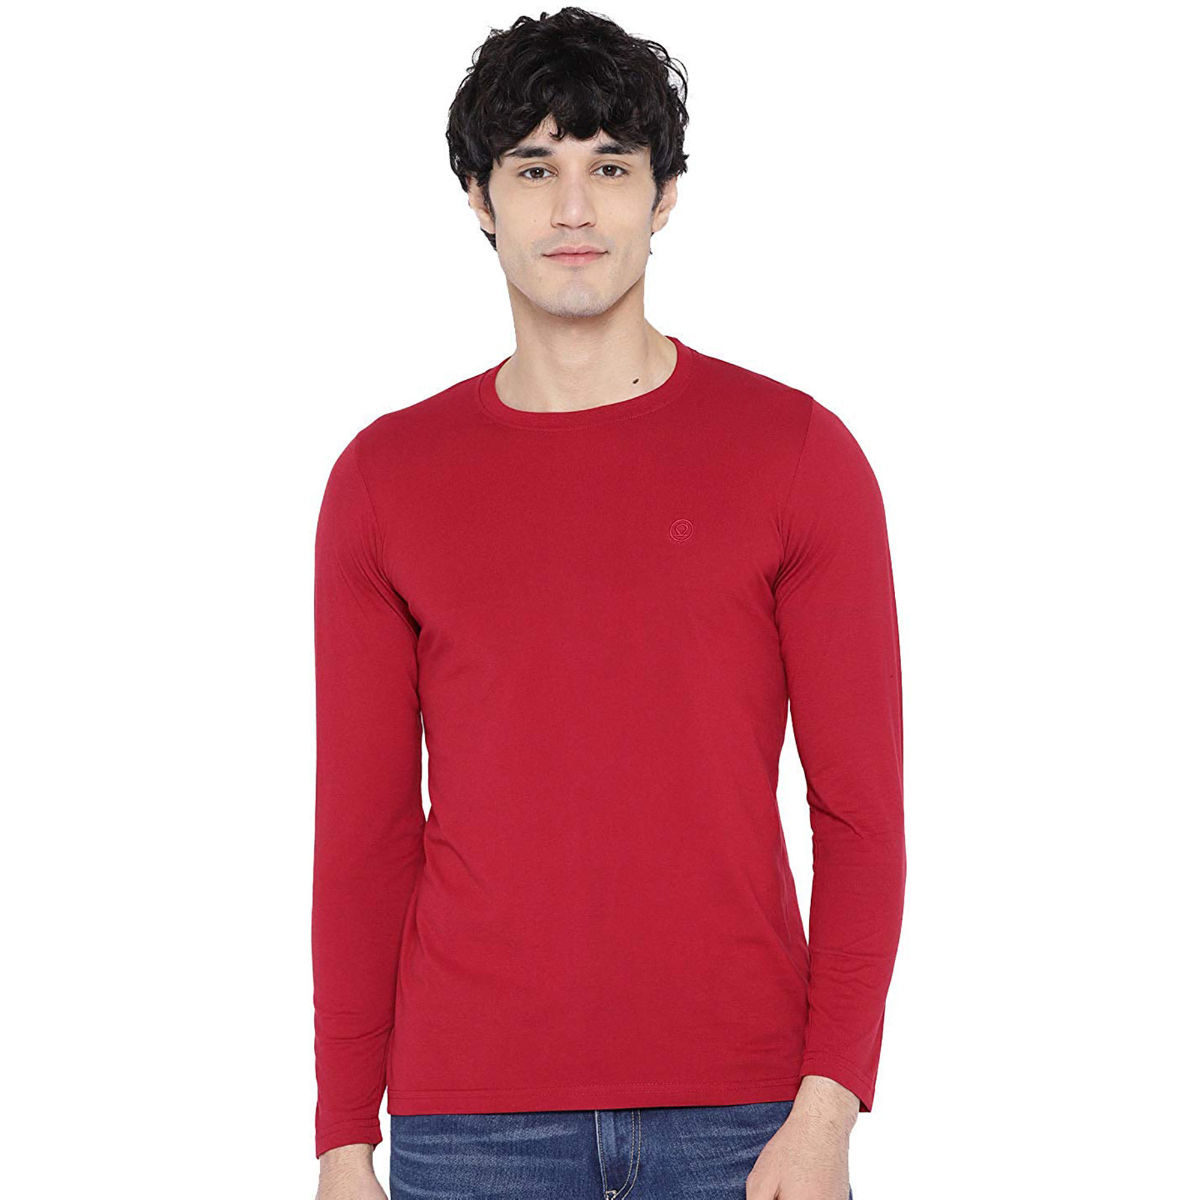 CHKOKKO Red Round Neck T-Shirt (S)